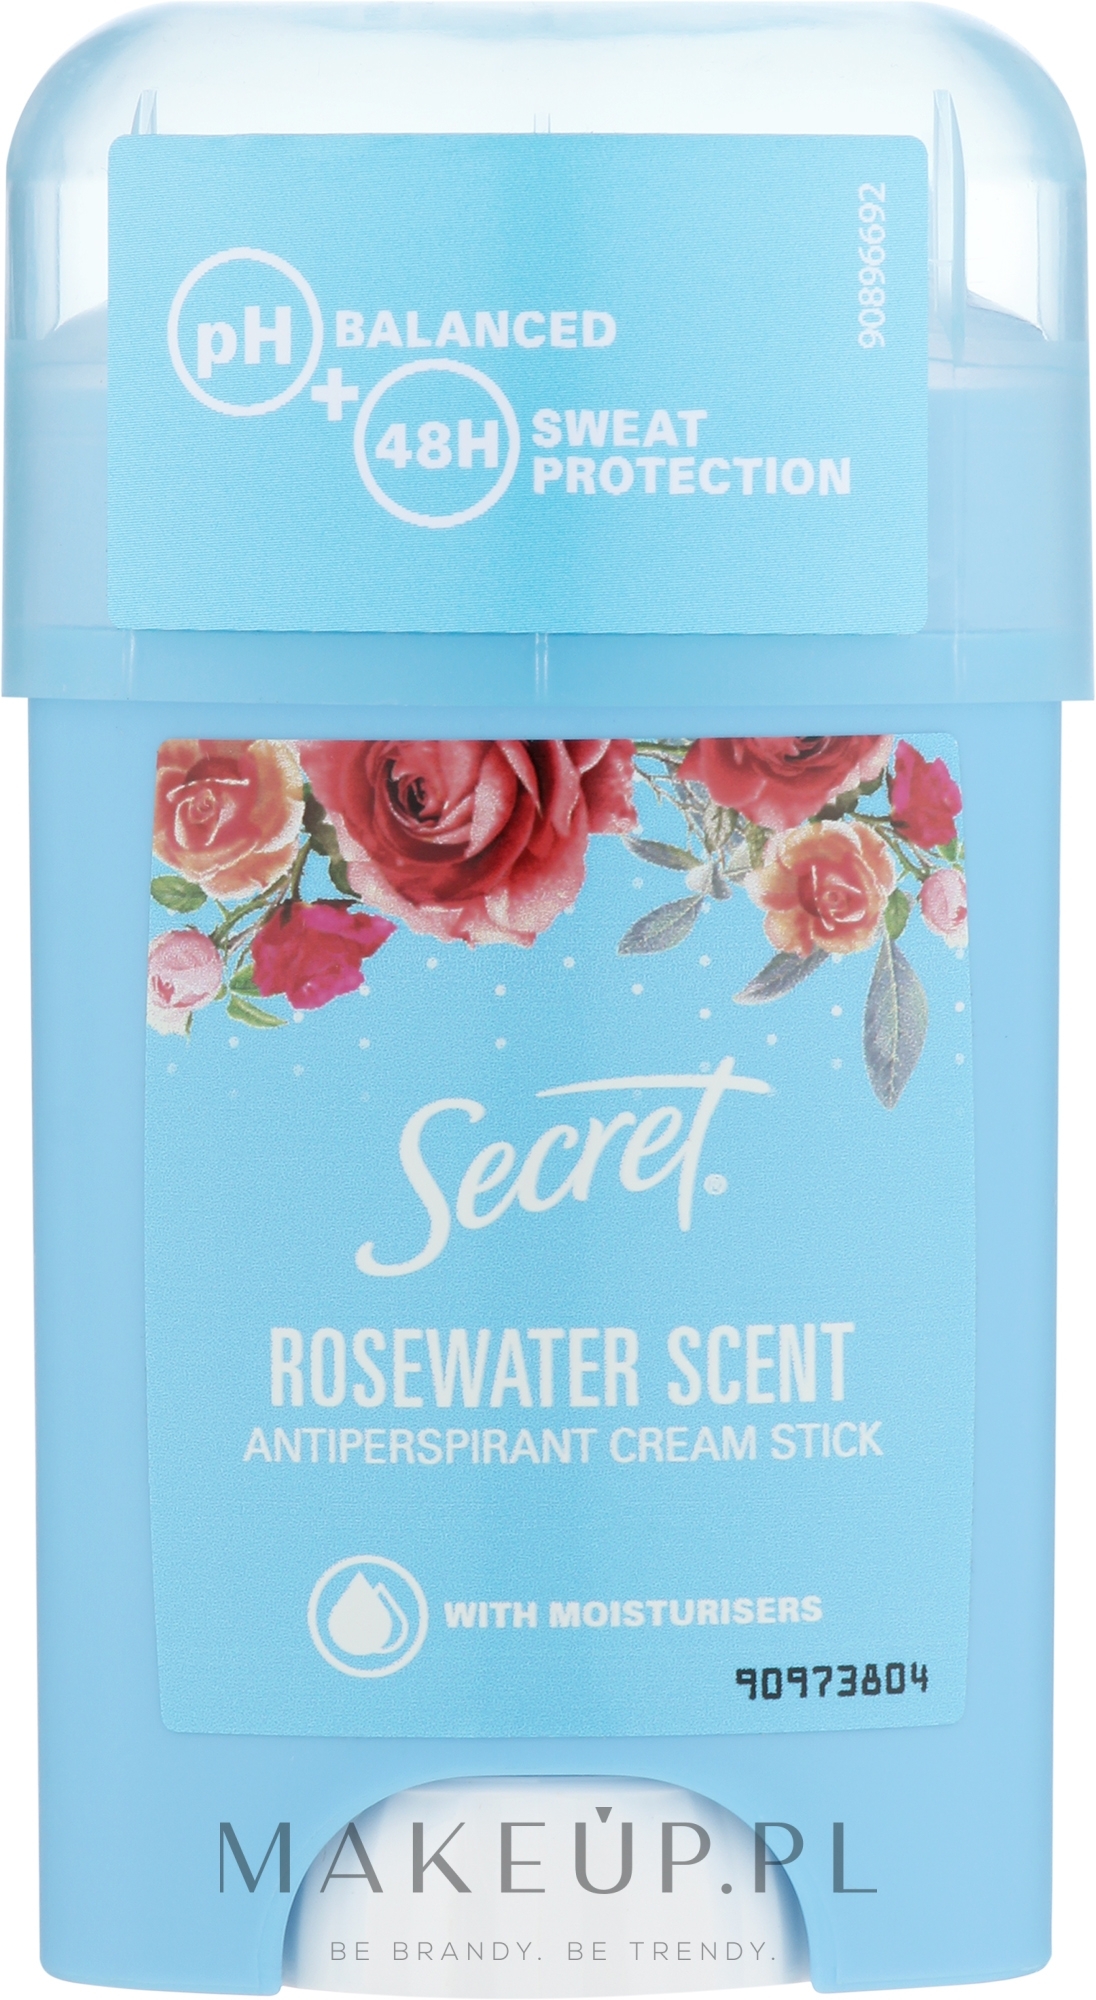 Kremowy antyperspirant w sztyfcie Woda różana - Secret Antiperspirant Cream Stick Rosewater Scent — Zdjęcie 40 g